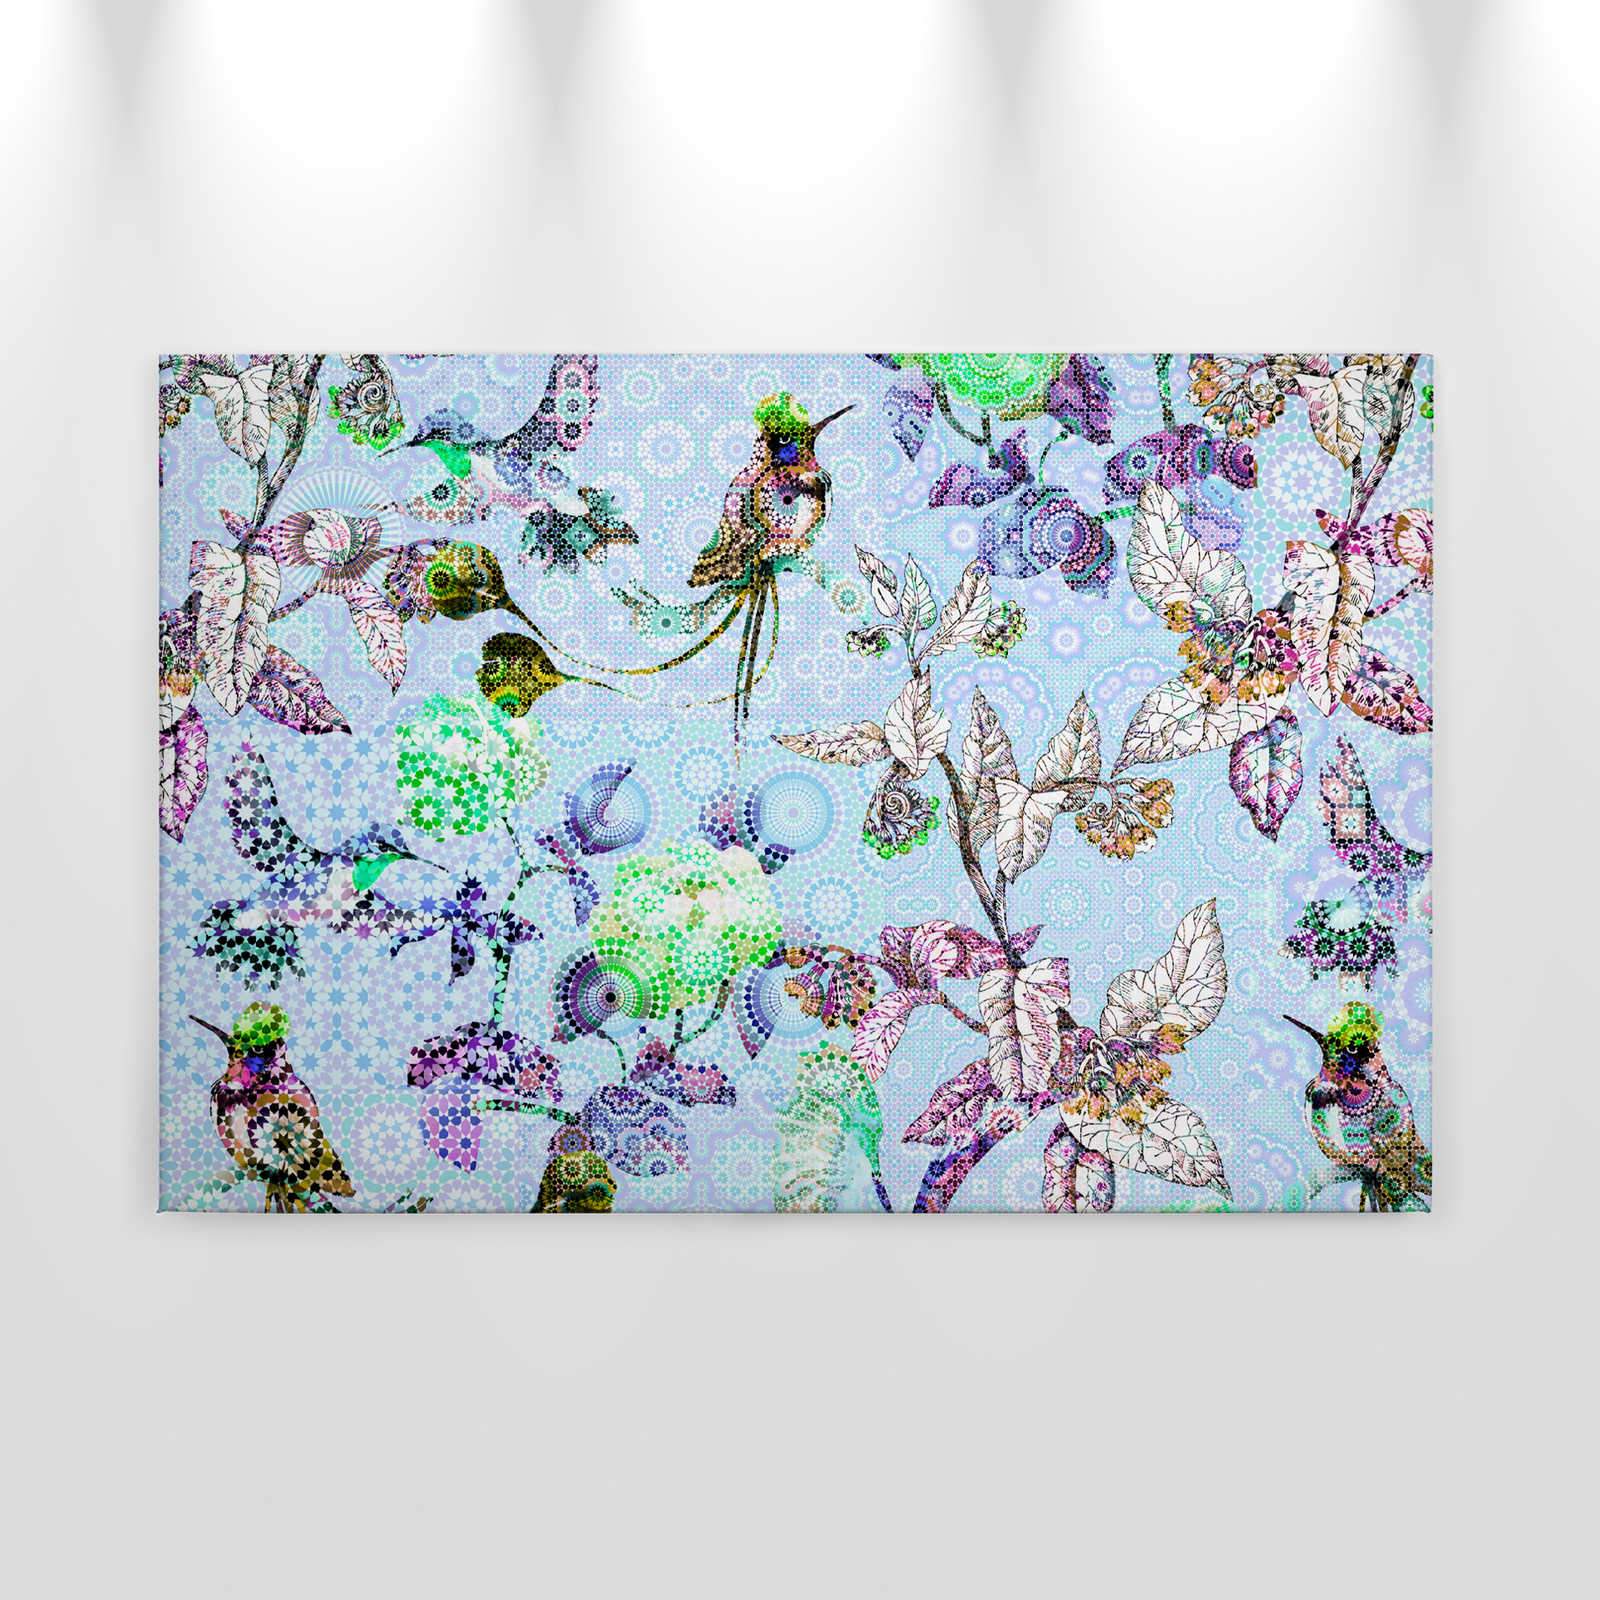             Leinwandbild Blumen & Vögel im Mosaik Stil – 0,90 m x 0,60 m
        